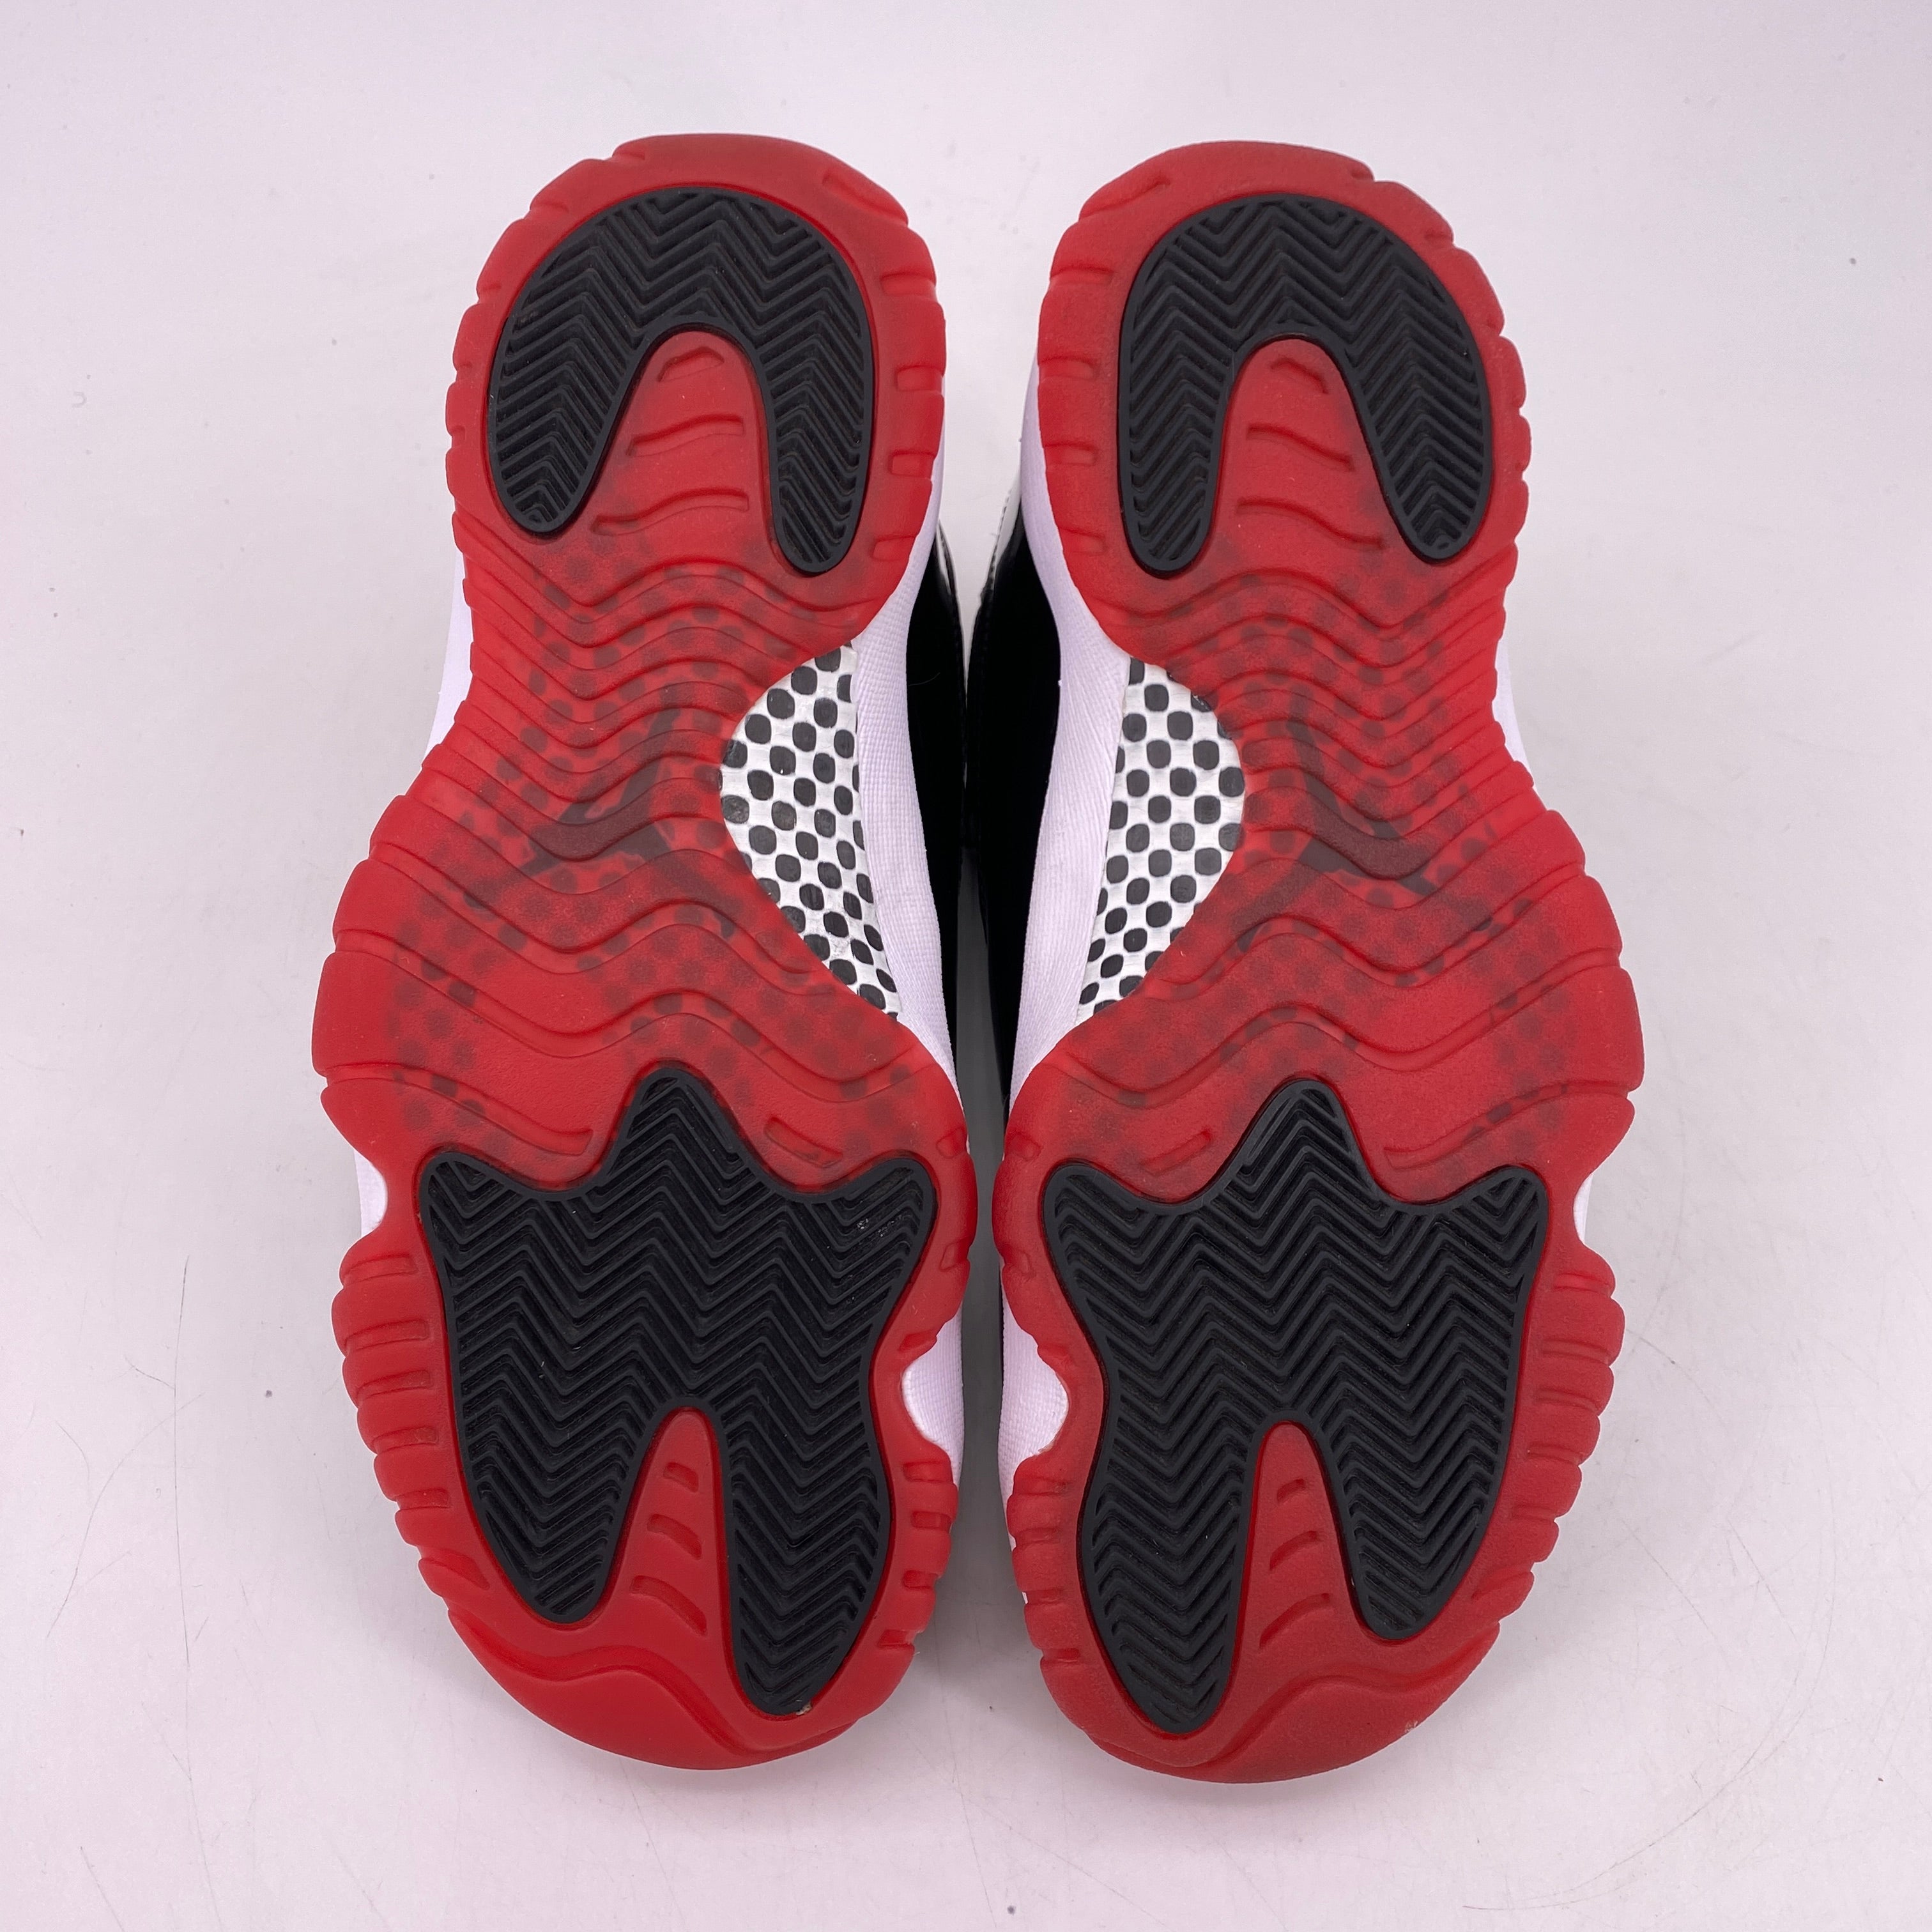 Air Jordan 11 Retro &quot;Bred&quot; 2019 Used Size 8